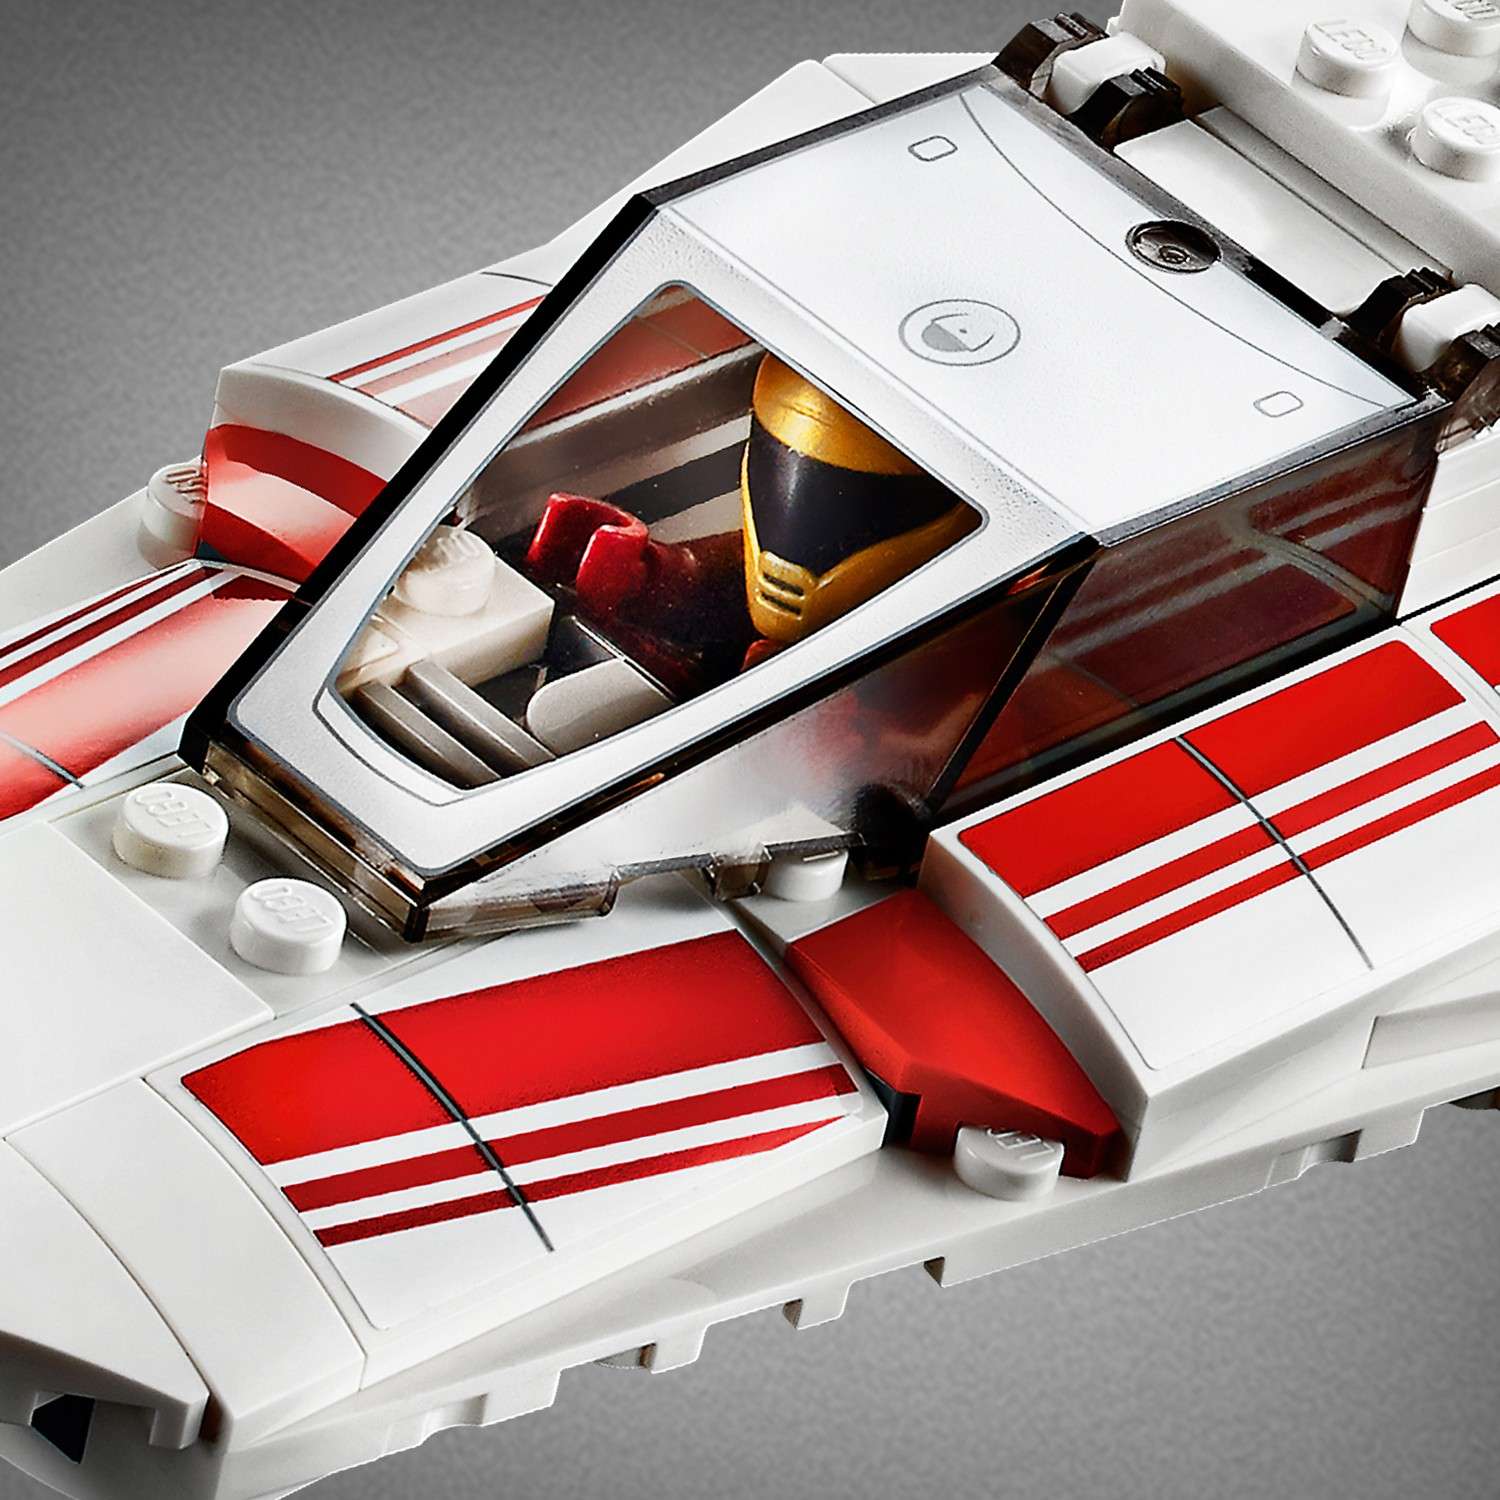 Конструктор LEGO Star Wars Episode IX Звездный истребитель повстанцев типа Y 75249 - фото 11